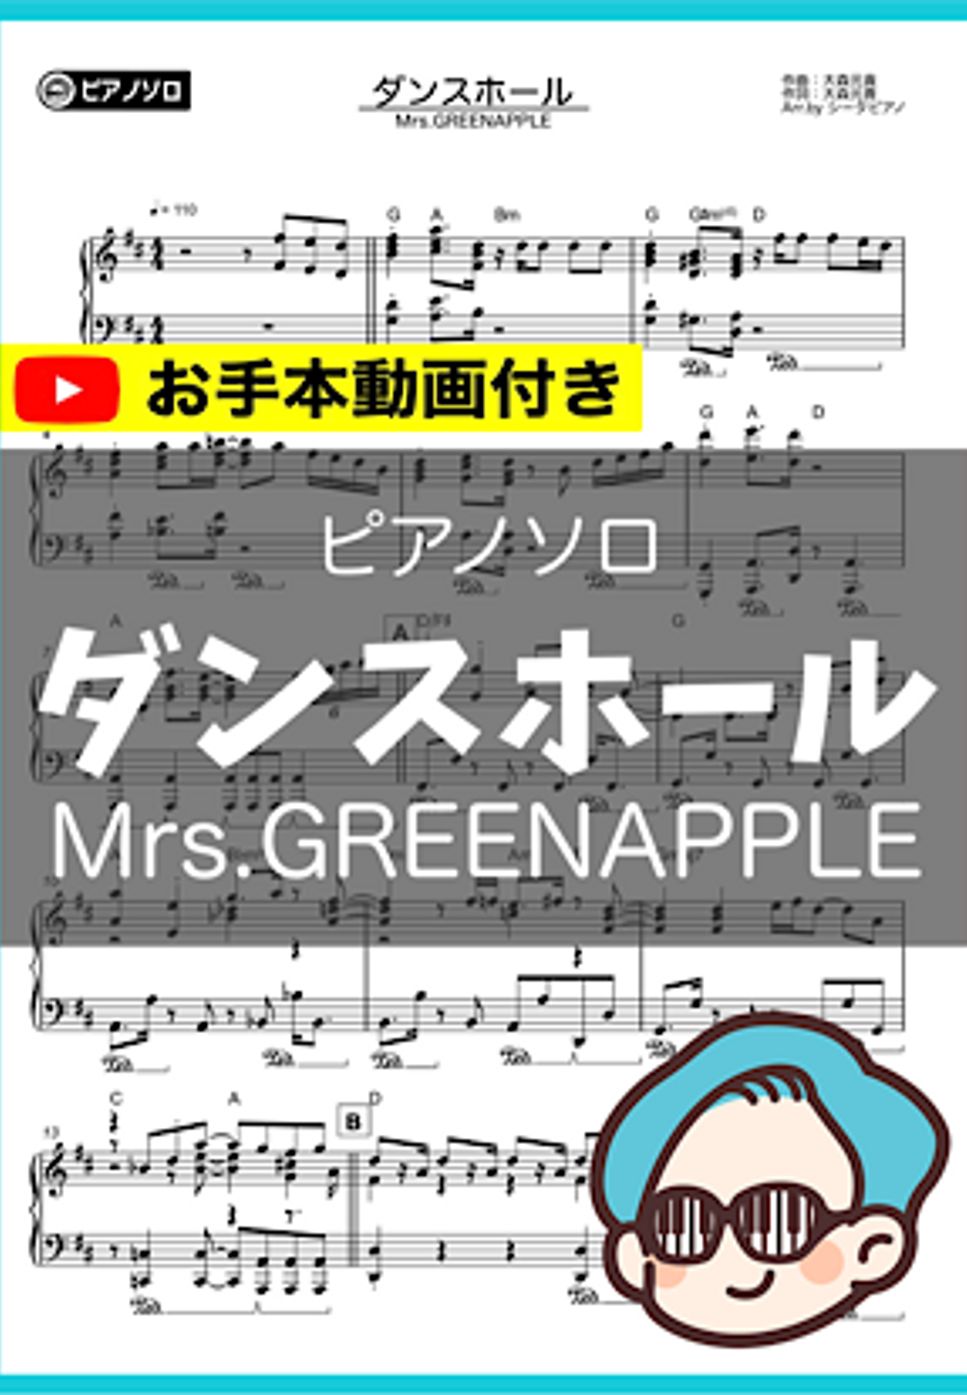 Mrs.GREENAPPLE - ダンスホール by シータピアノ